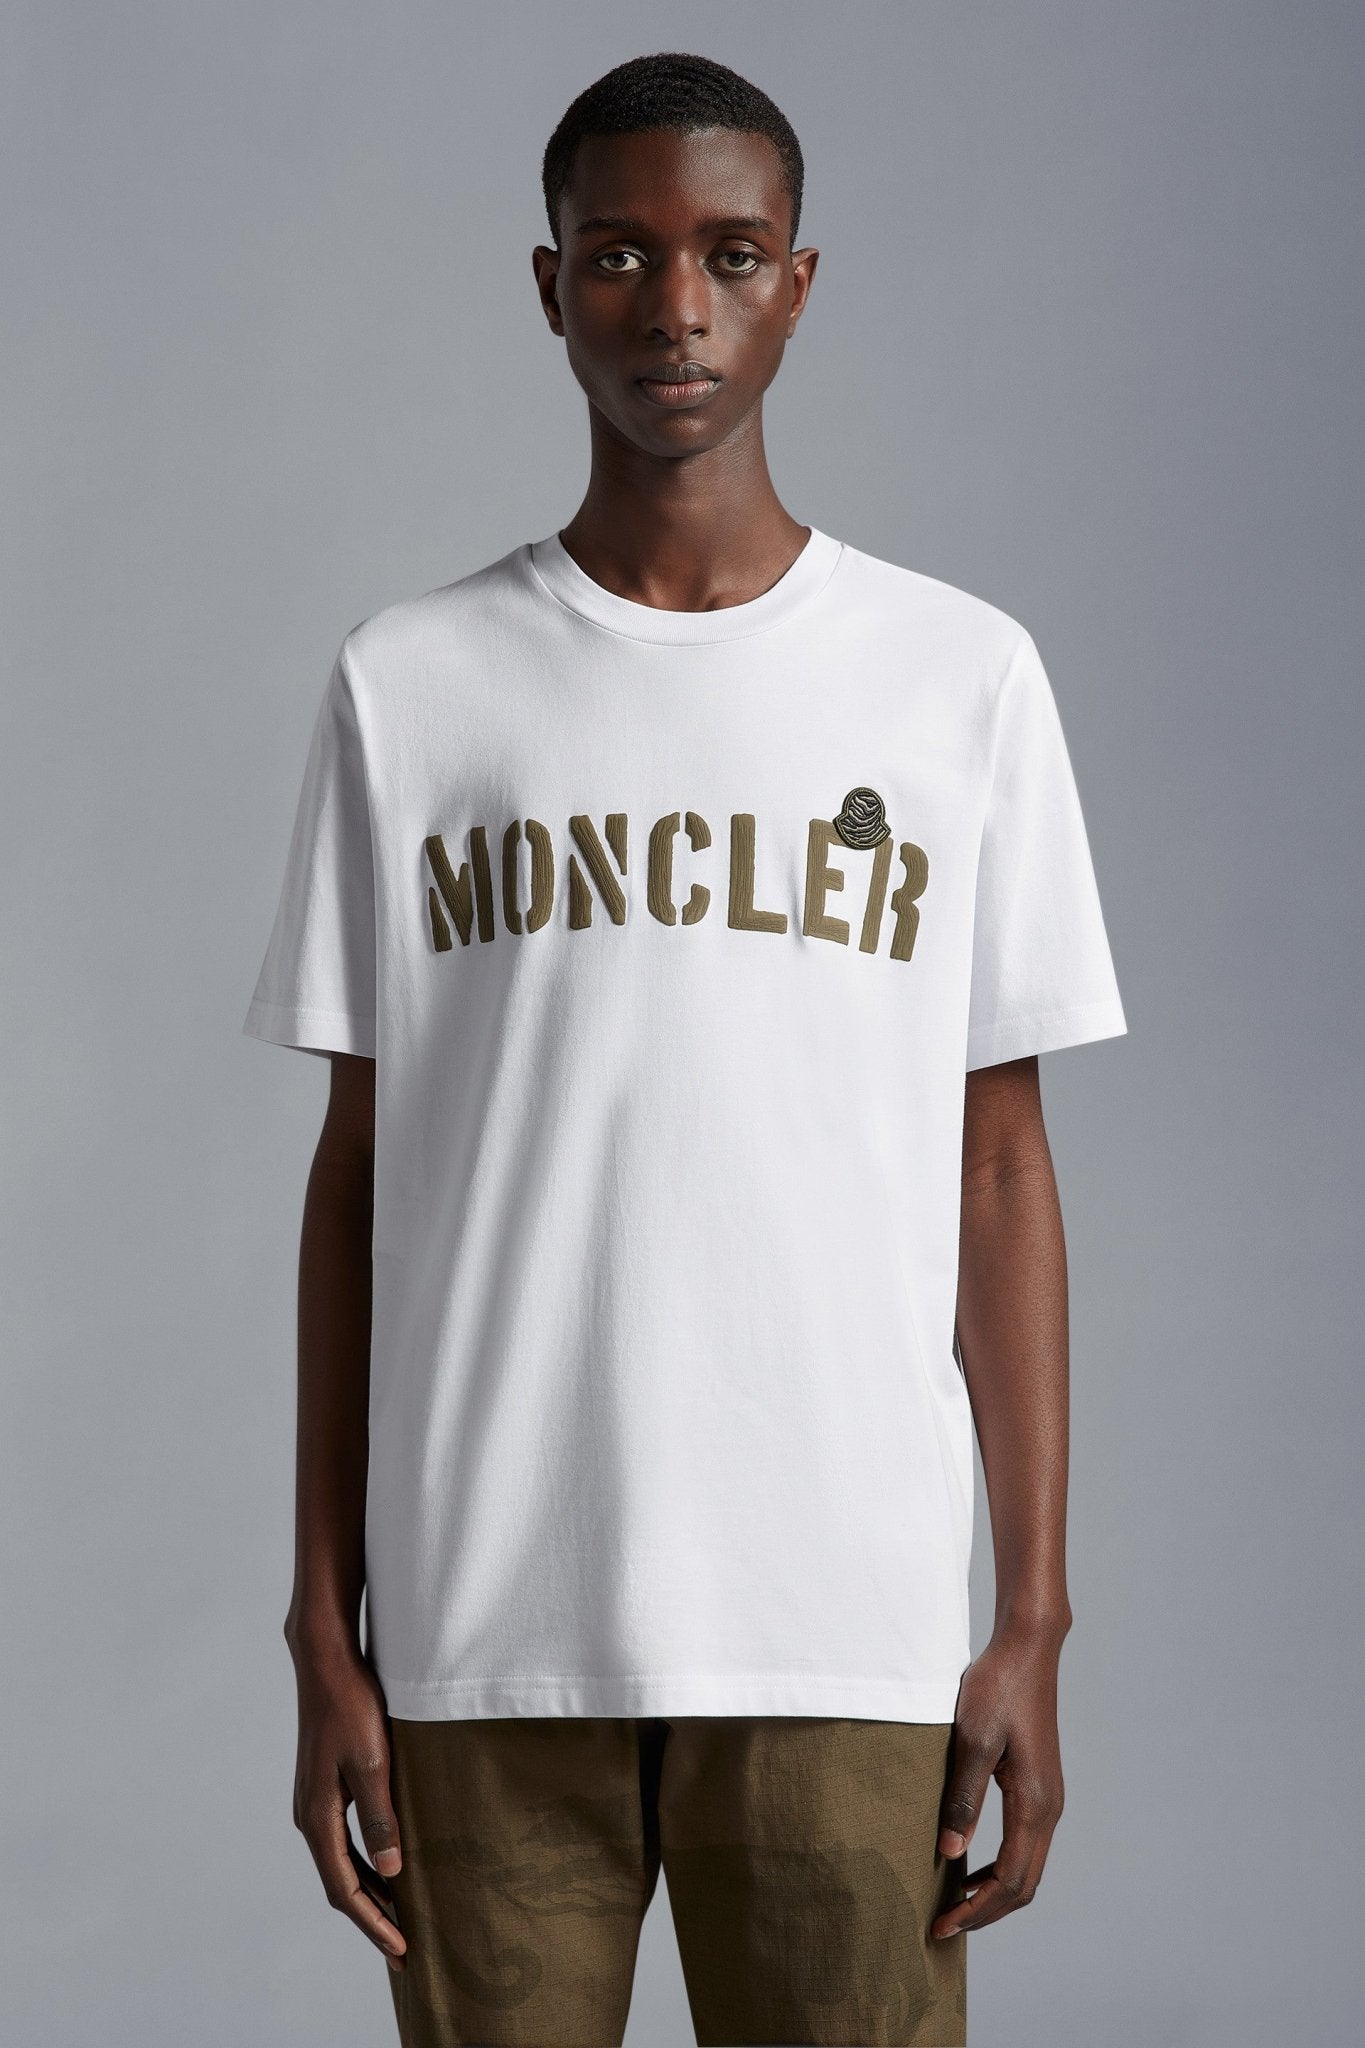 Moncler - T-shirt white à logo - Lothaire